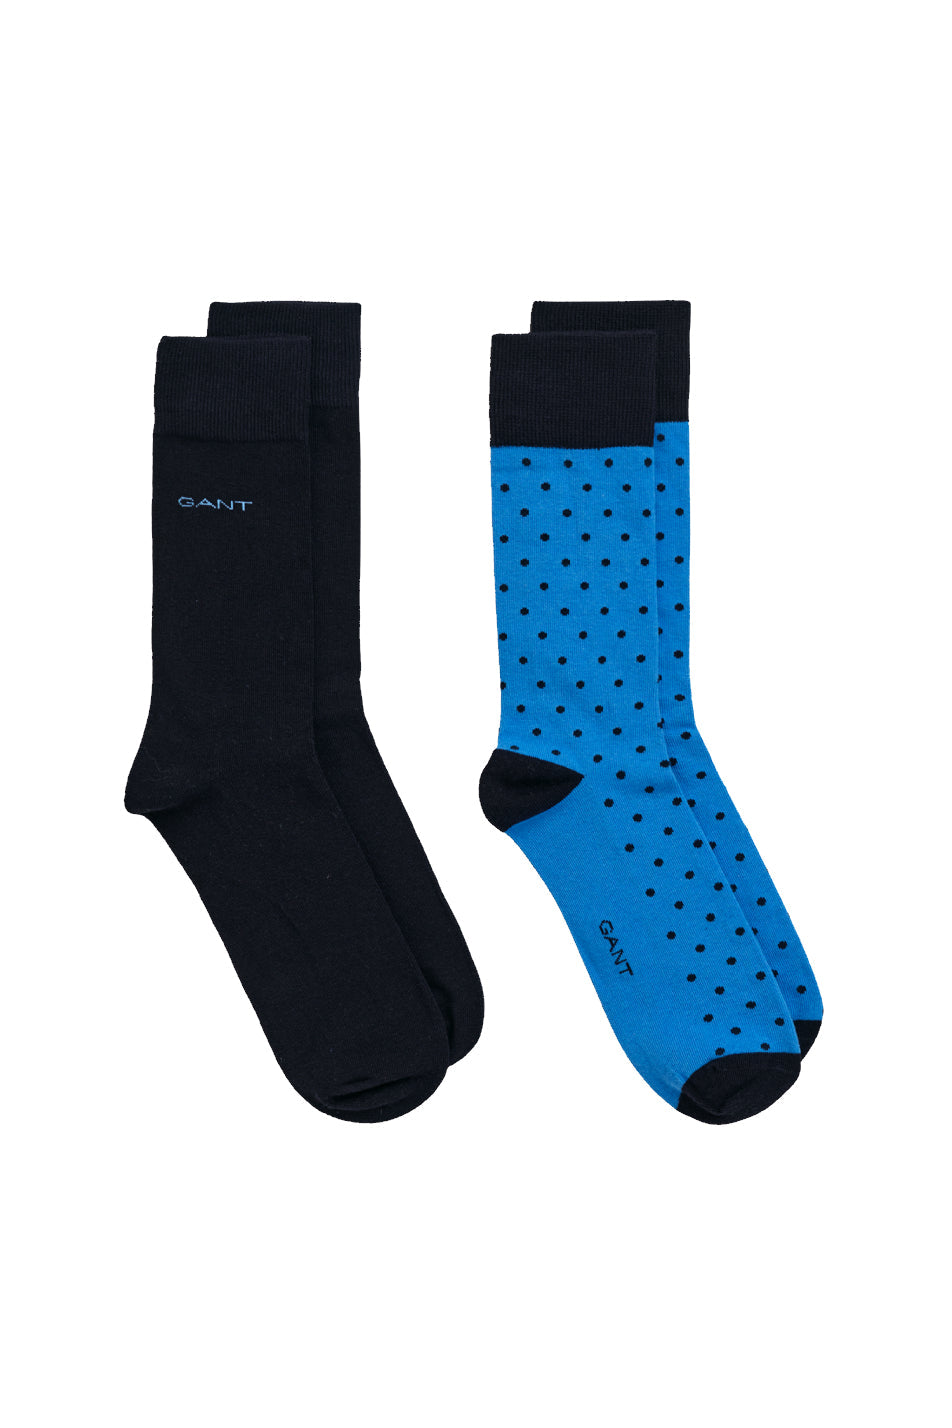 Gant 2 Pack Men's Dot Socks